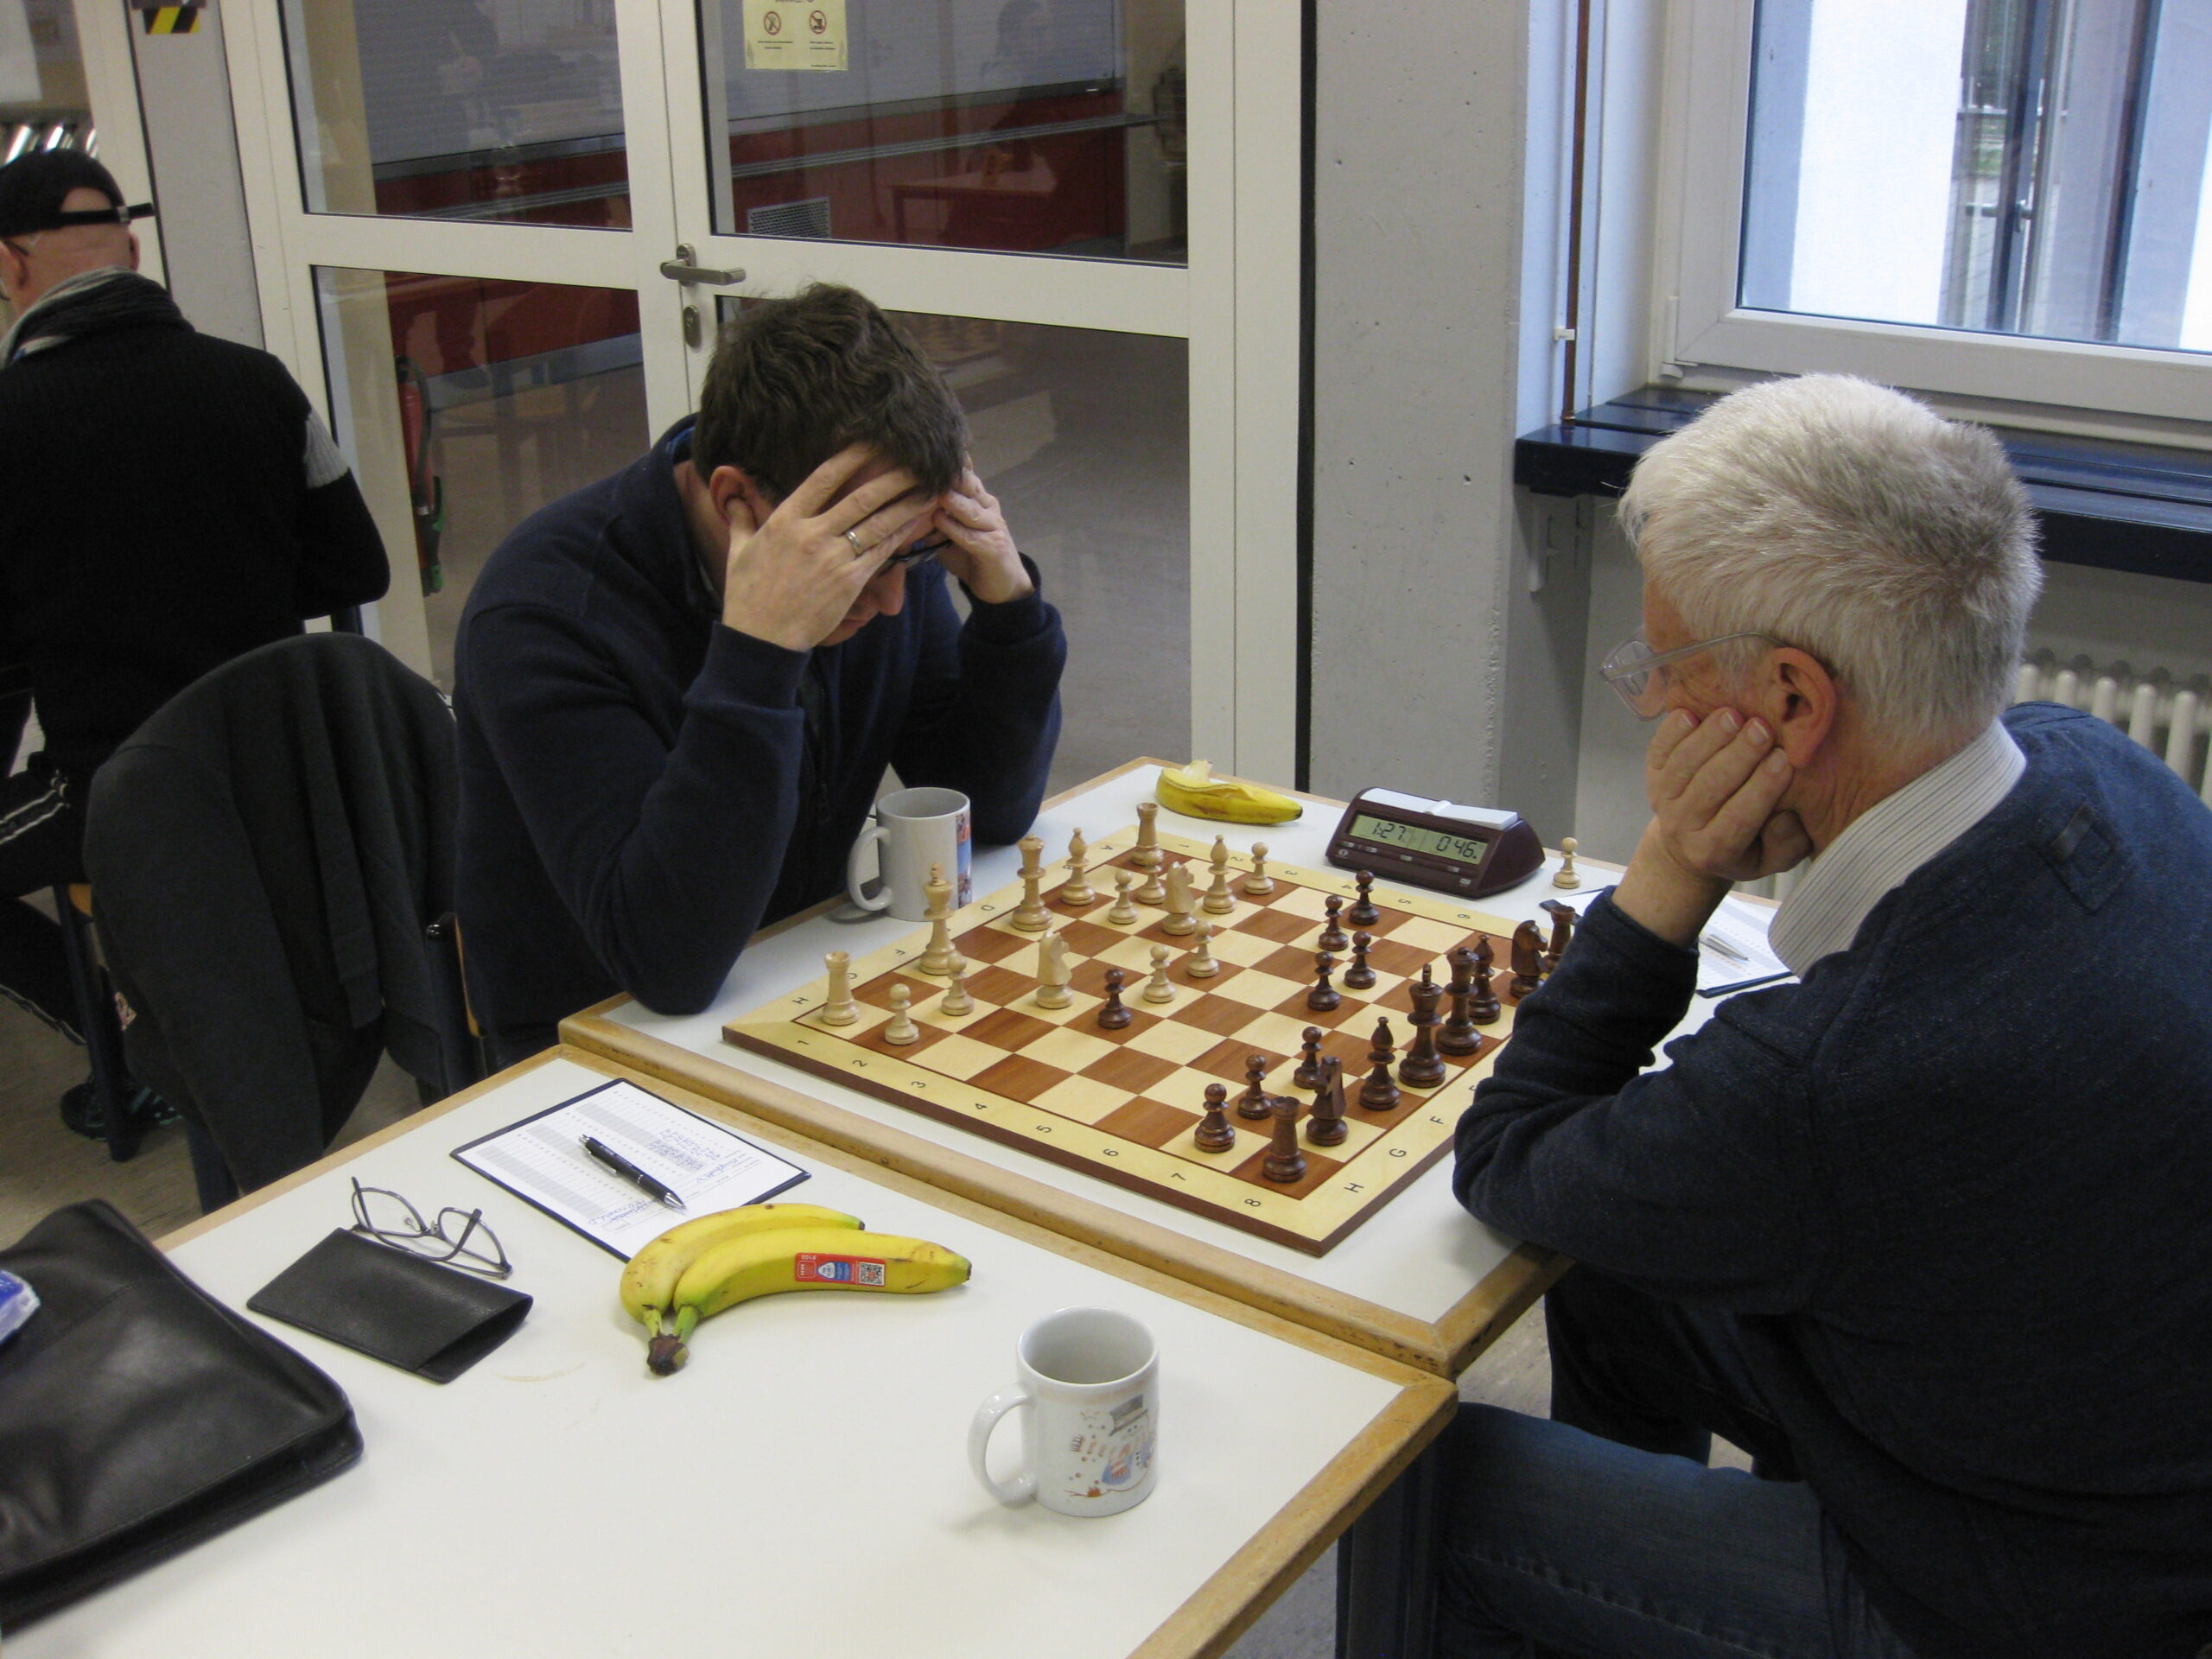 Schachclub Lambsheim » Mit Freude Schach spielen